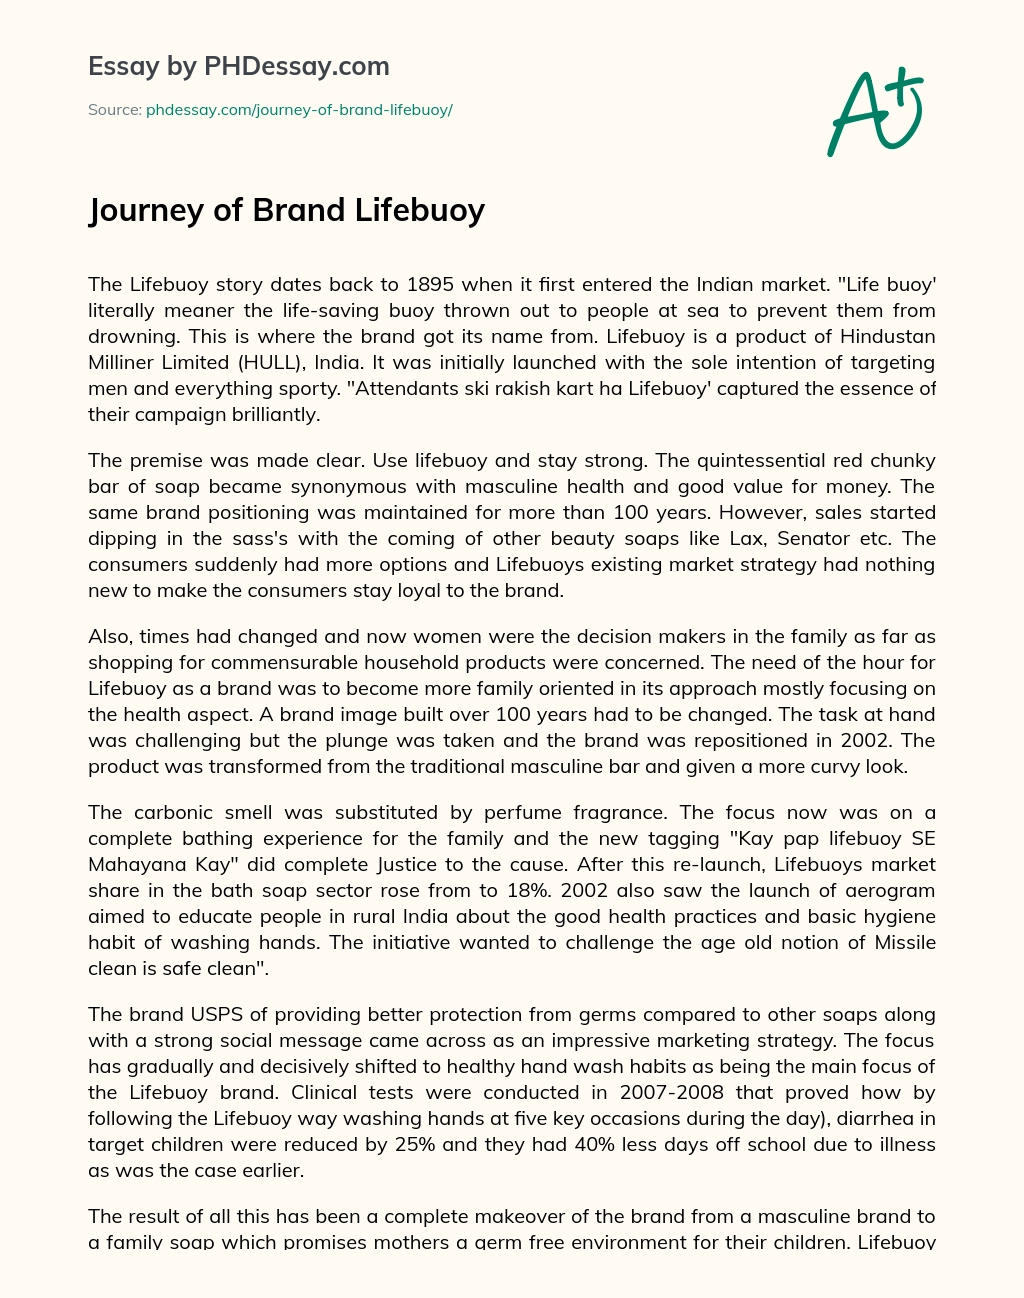 Journey of Brand Lifebuoy essay